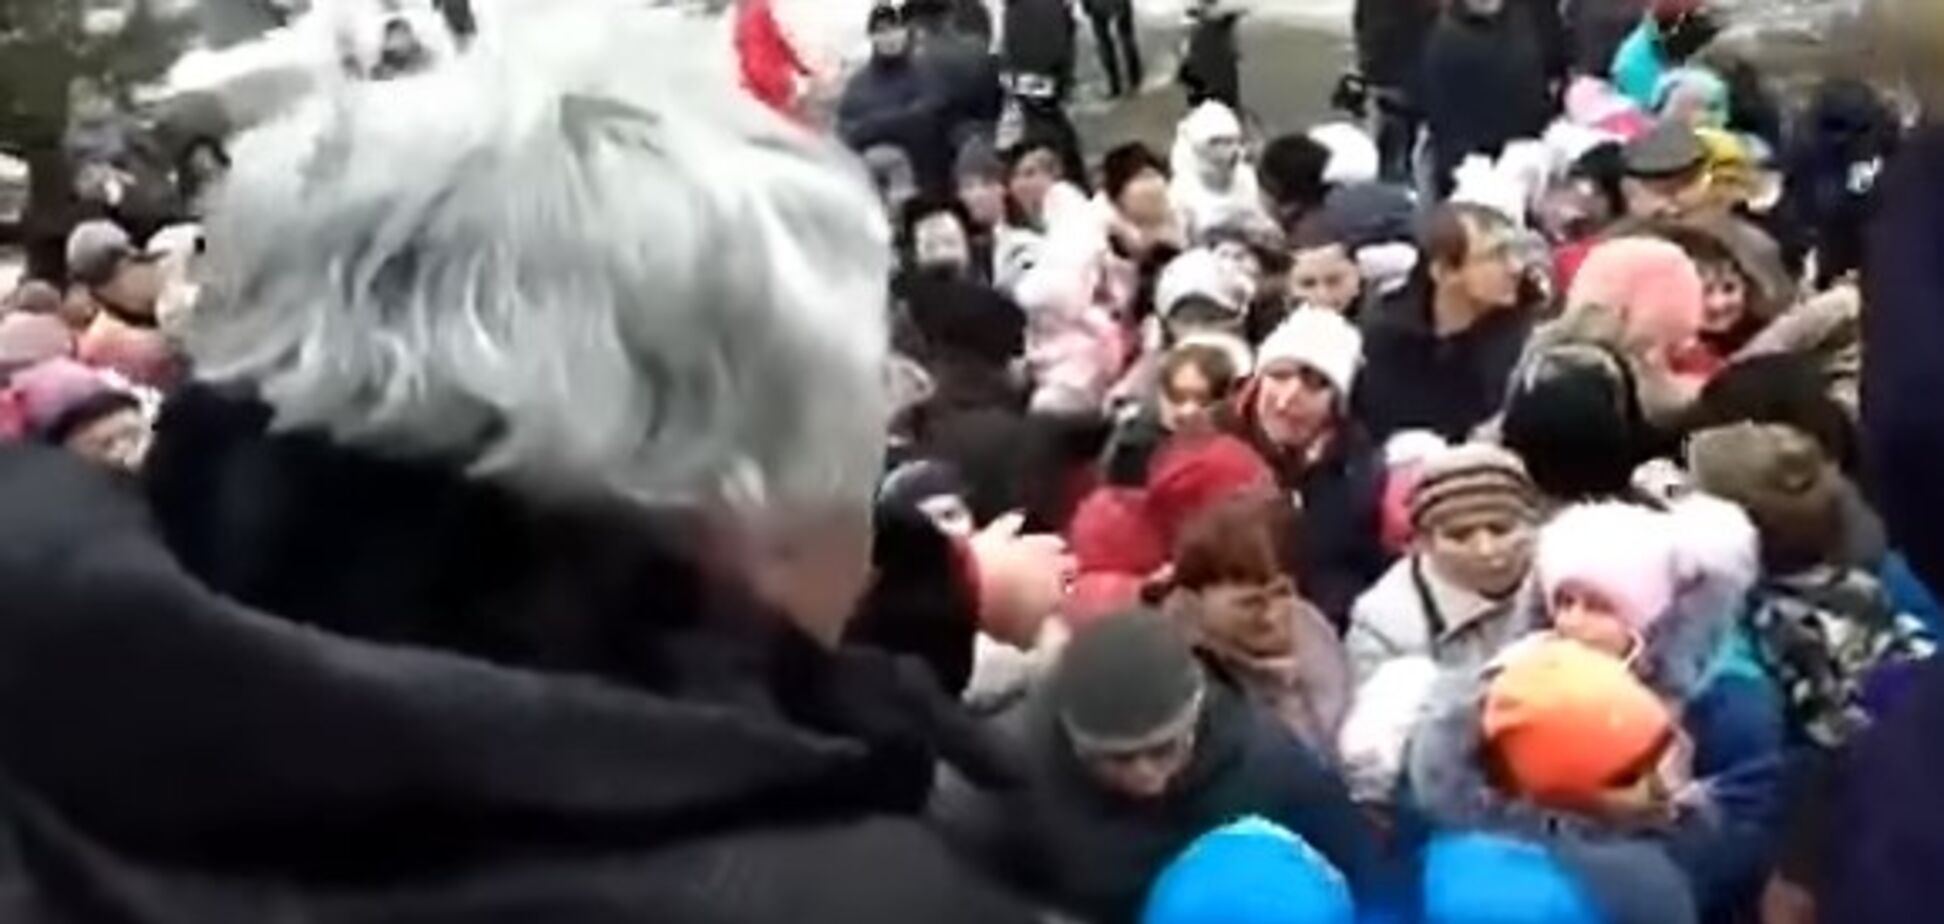 Детей чуть не угробили: россияне устроили лютую давку из-за бесплатных конфет. Опубликовано видео